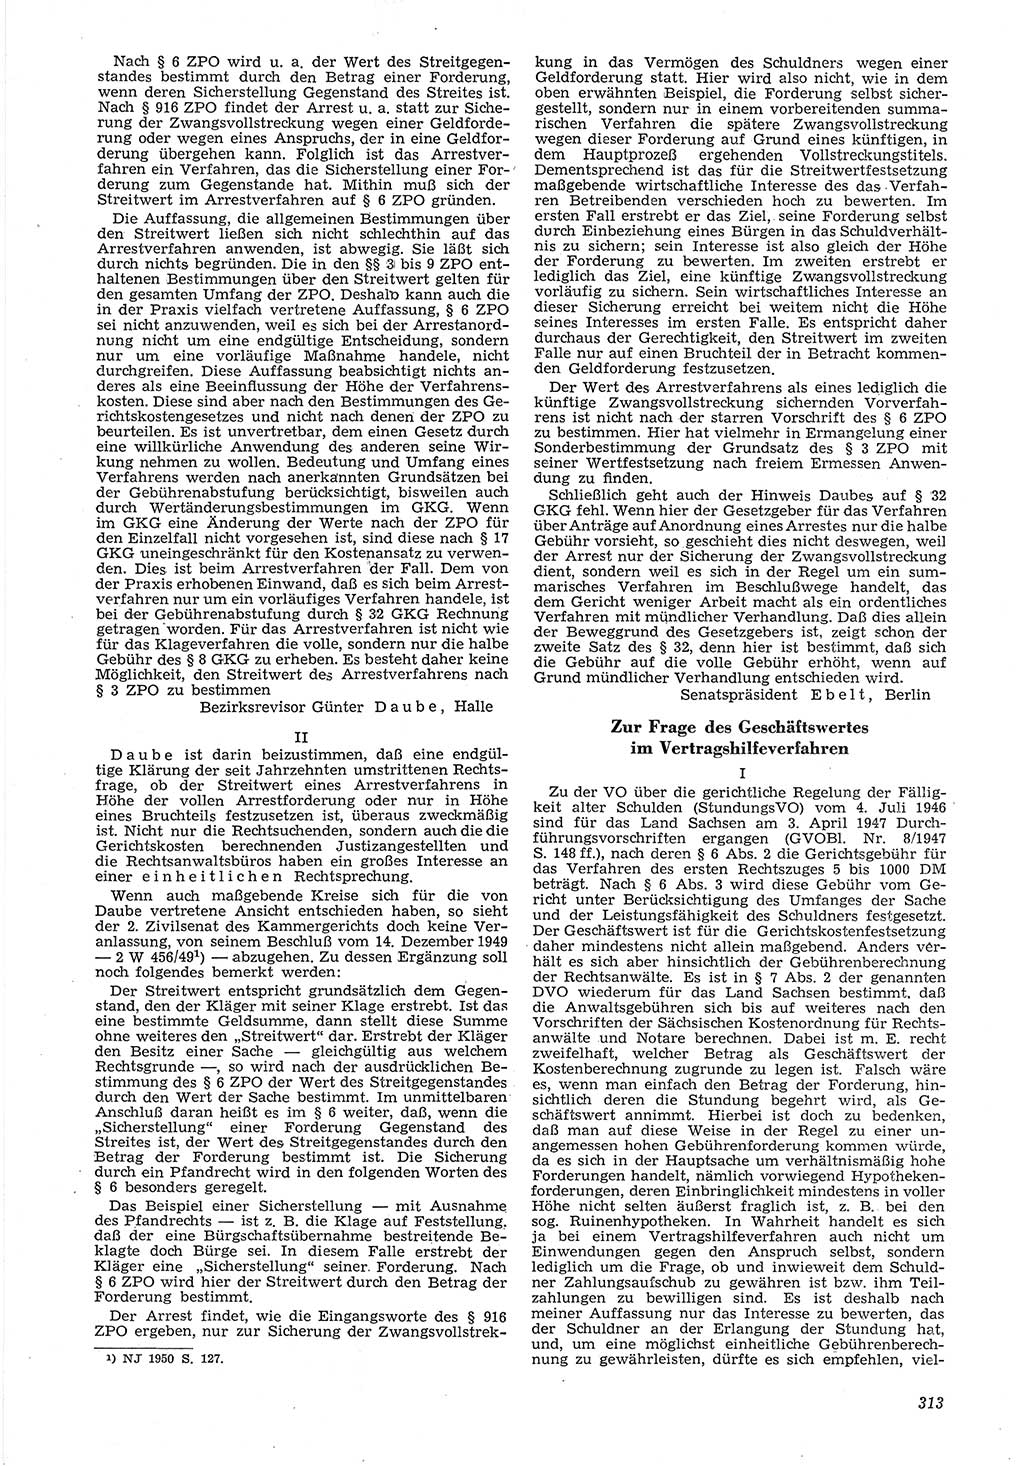 Neue Justiz (NJ), Zeitschrift für Recht und Rechtswissenschaft [Deutsche Demokratische Republik (DDR)], 6. Jahrgang 1952, Seite 313 (NJ DDR 1952, S. 313)